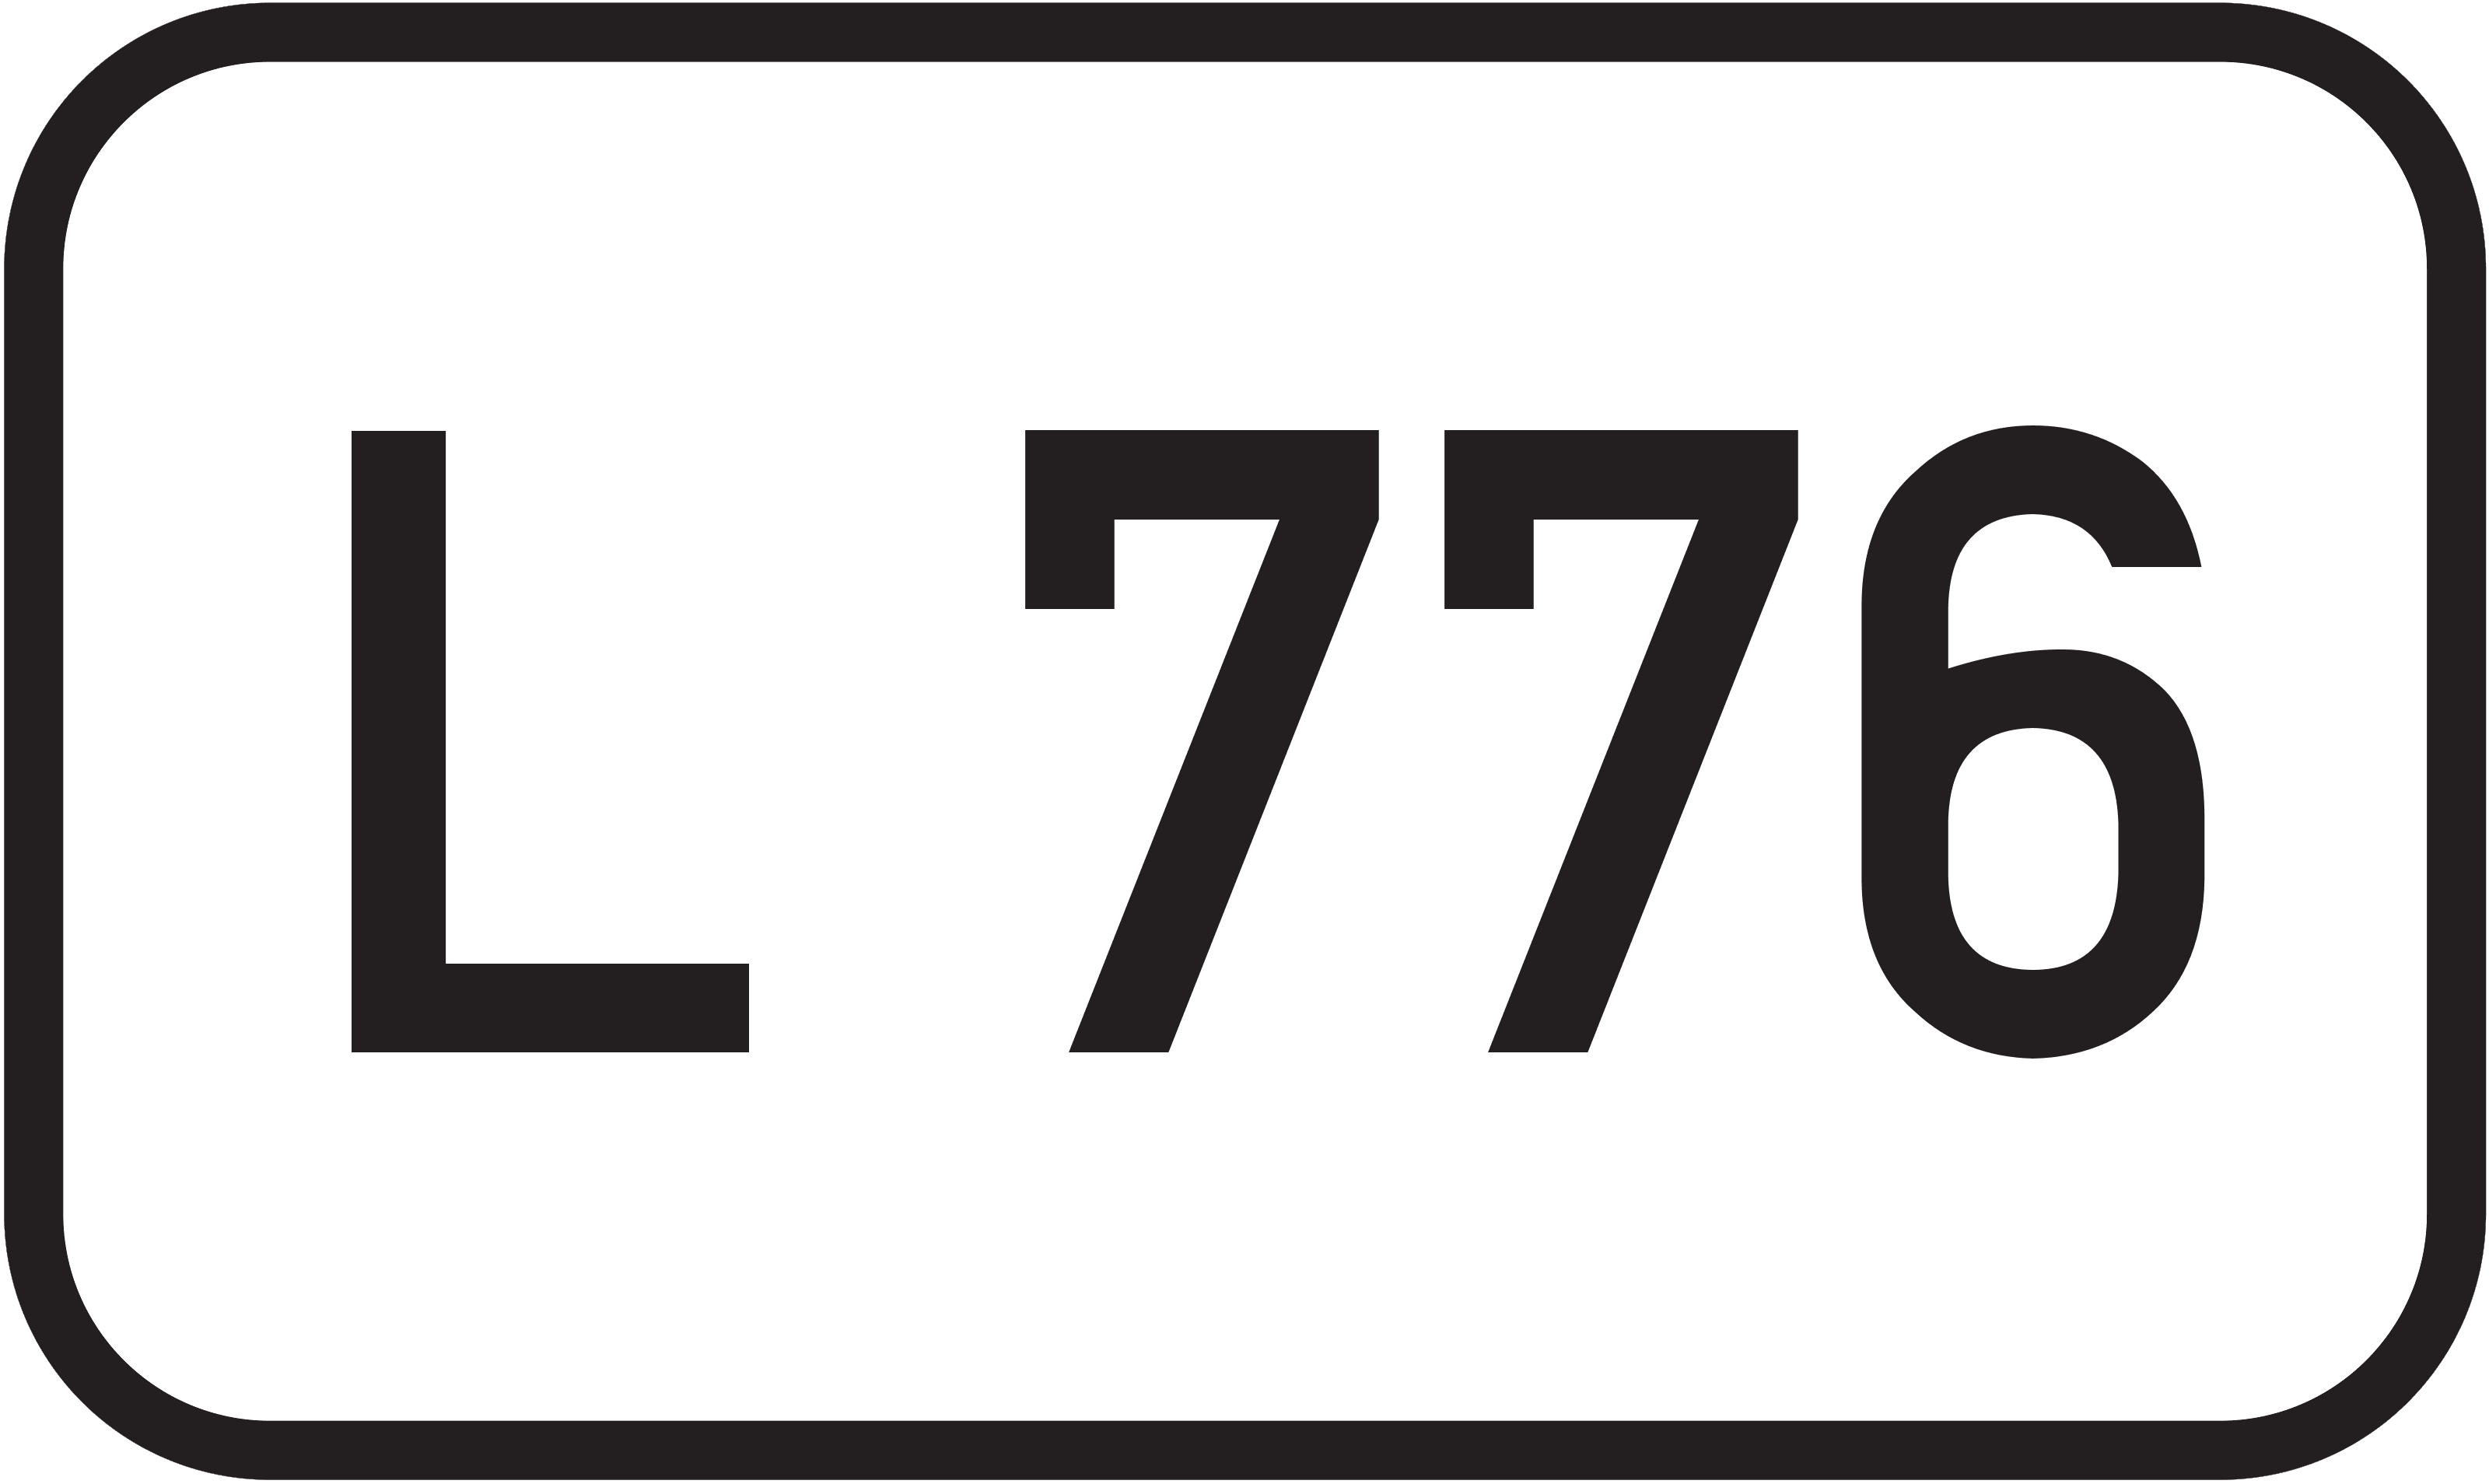 Landesstraße L 776